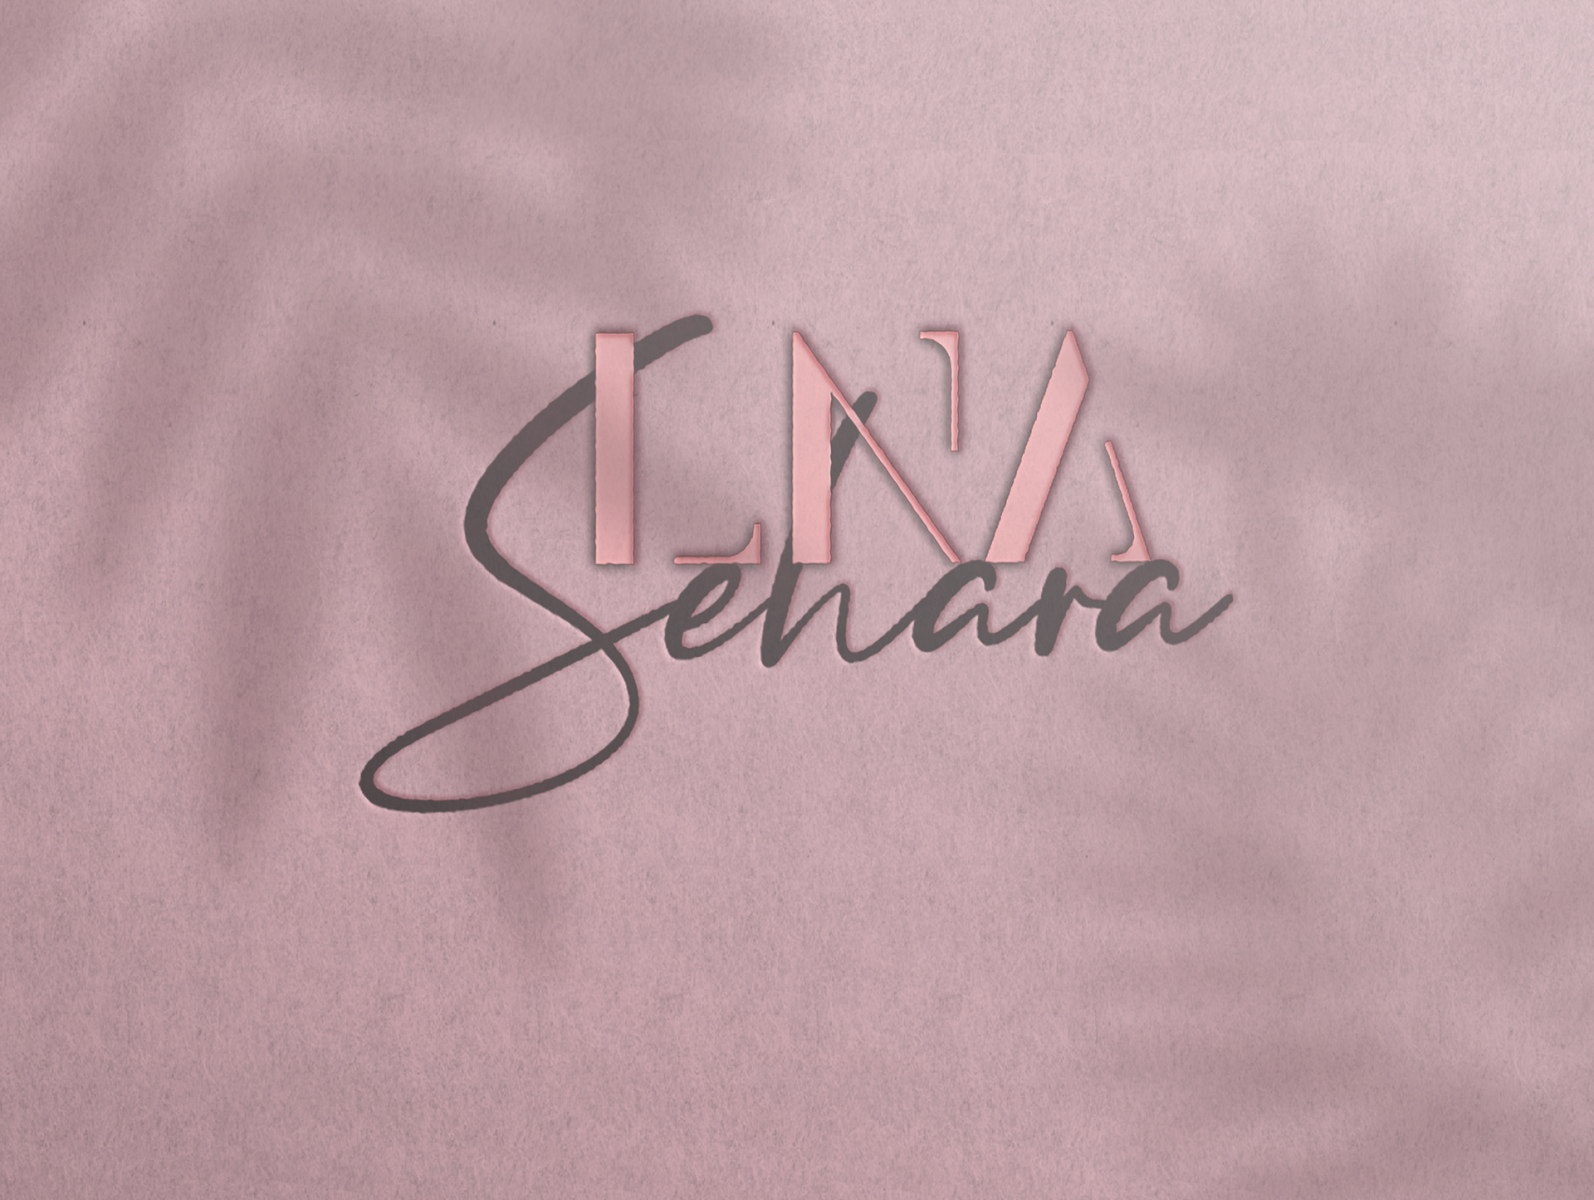 LNA Sehara - logo by Haris on Dribbble